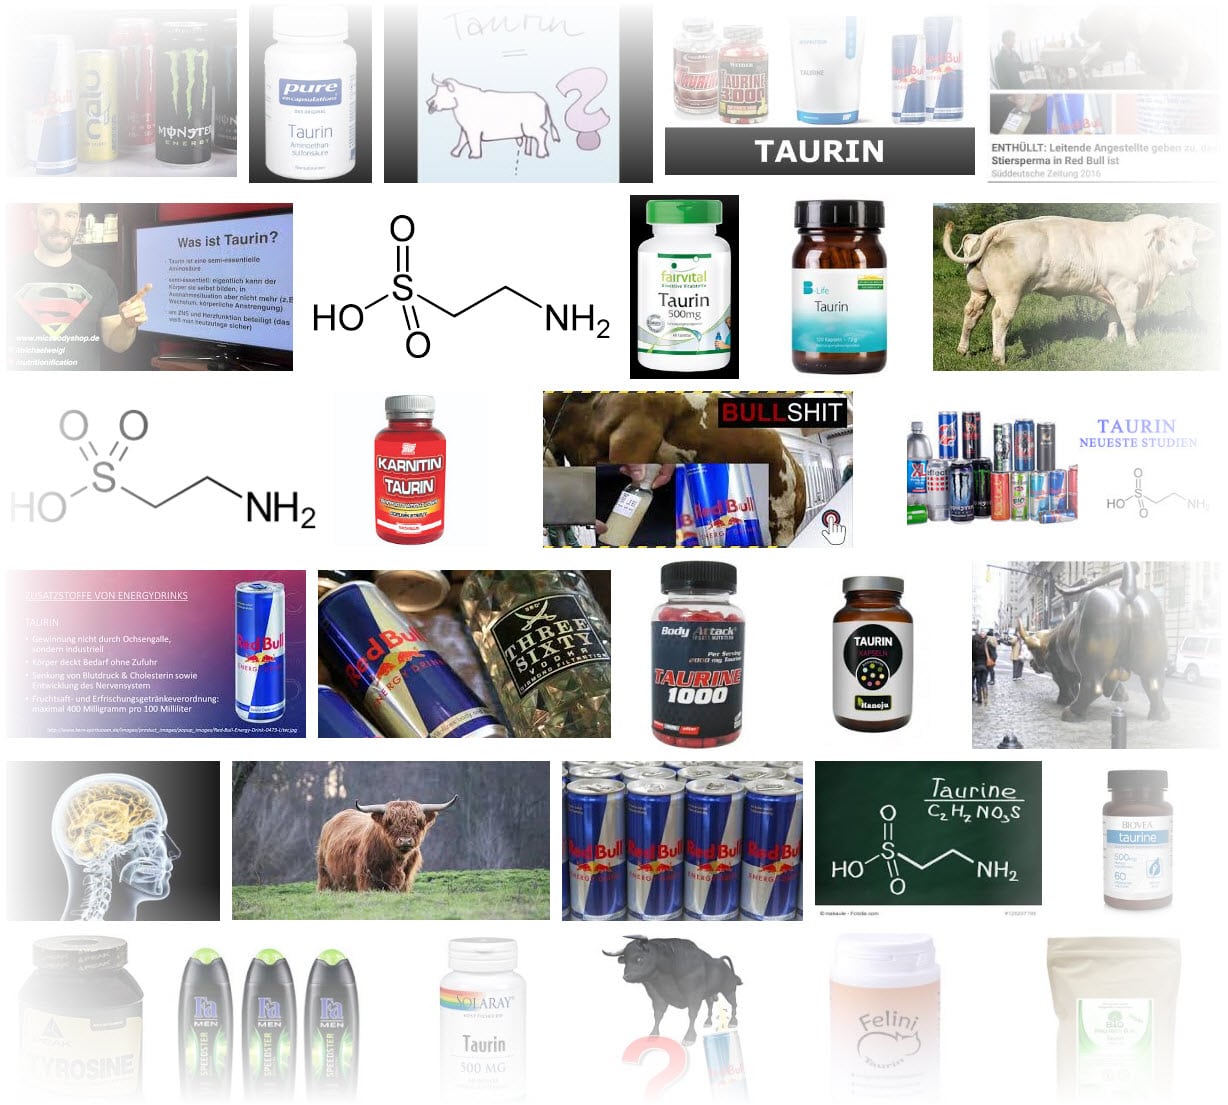 Was ist Taurin und wie erfolgt die Herstellung? - Eine Recherche in der Google Bildersuche zeigt verschiedene Darreichungsformen von Energy Drinks bis Kapseln, und referenziert immer wieder den Mythos, der Wirkstoff sei aus Stierhoden gewonnen (images.google.de)